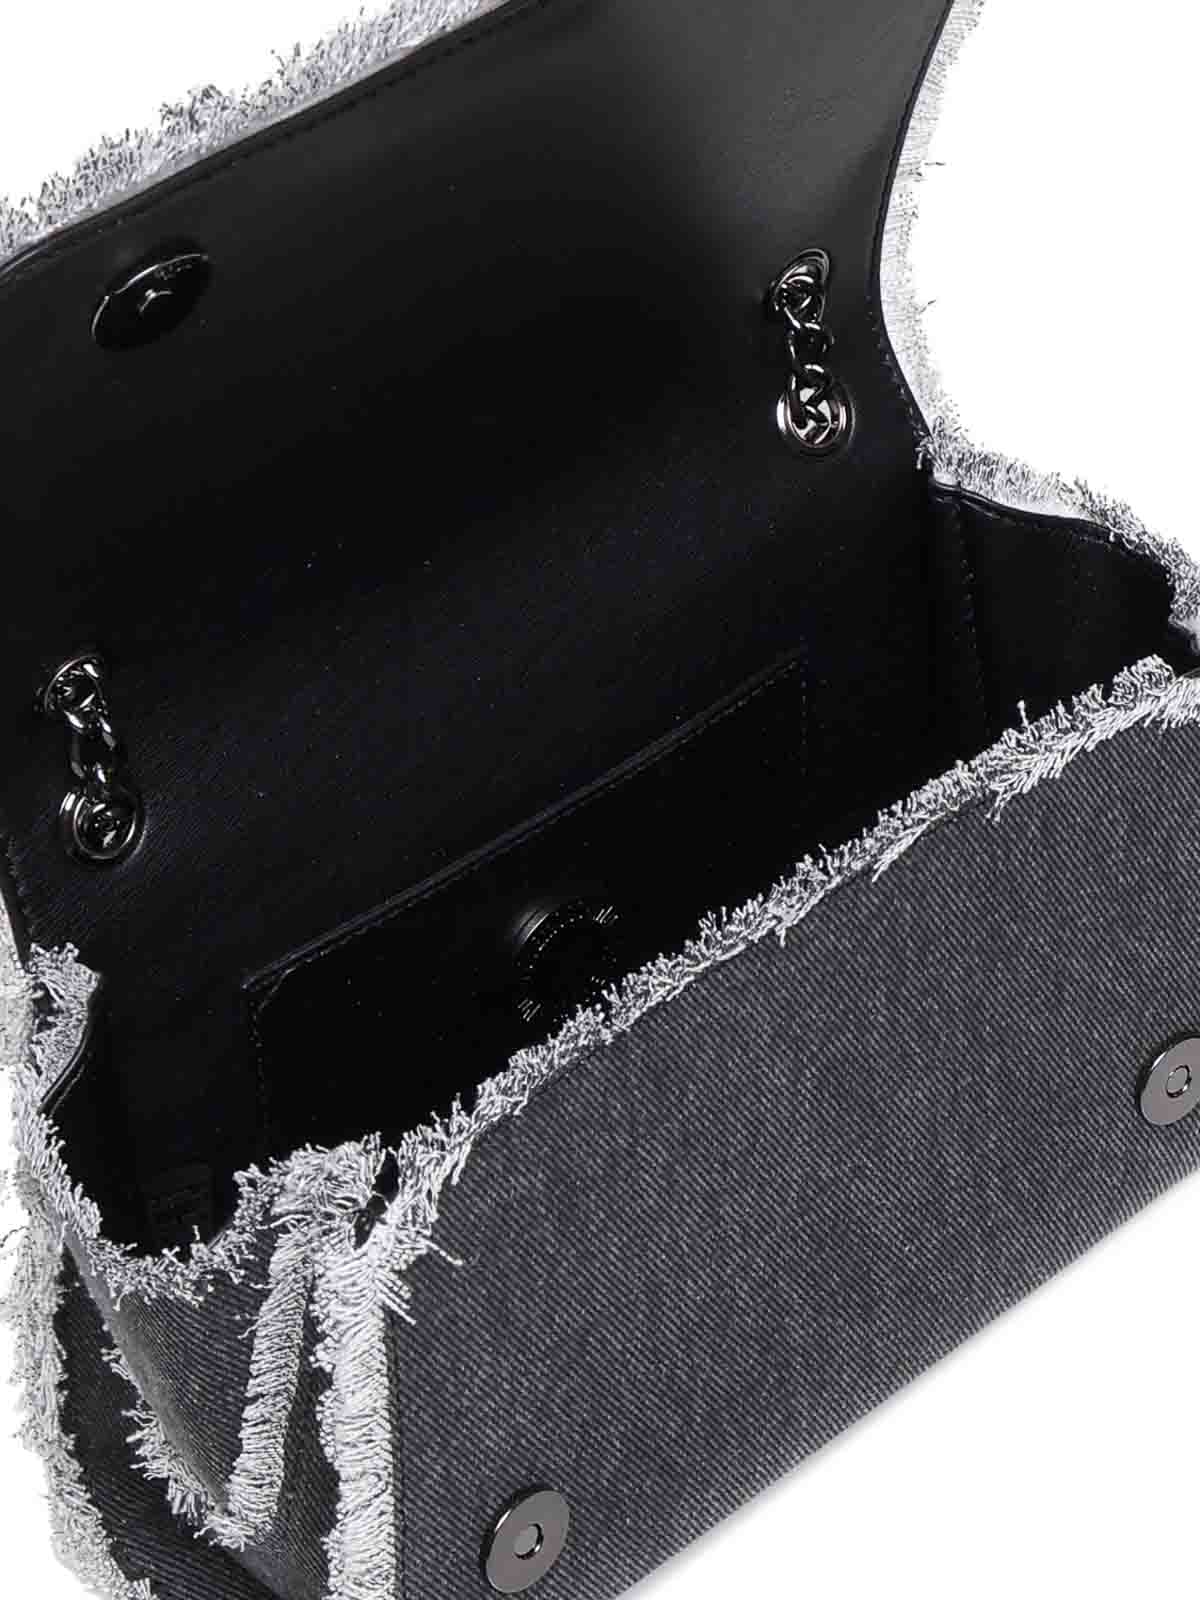 Shop Love Moschino Denim Shoulder Bag With Fringes In Black